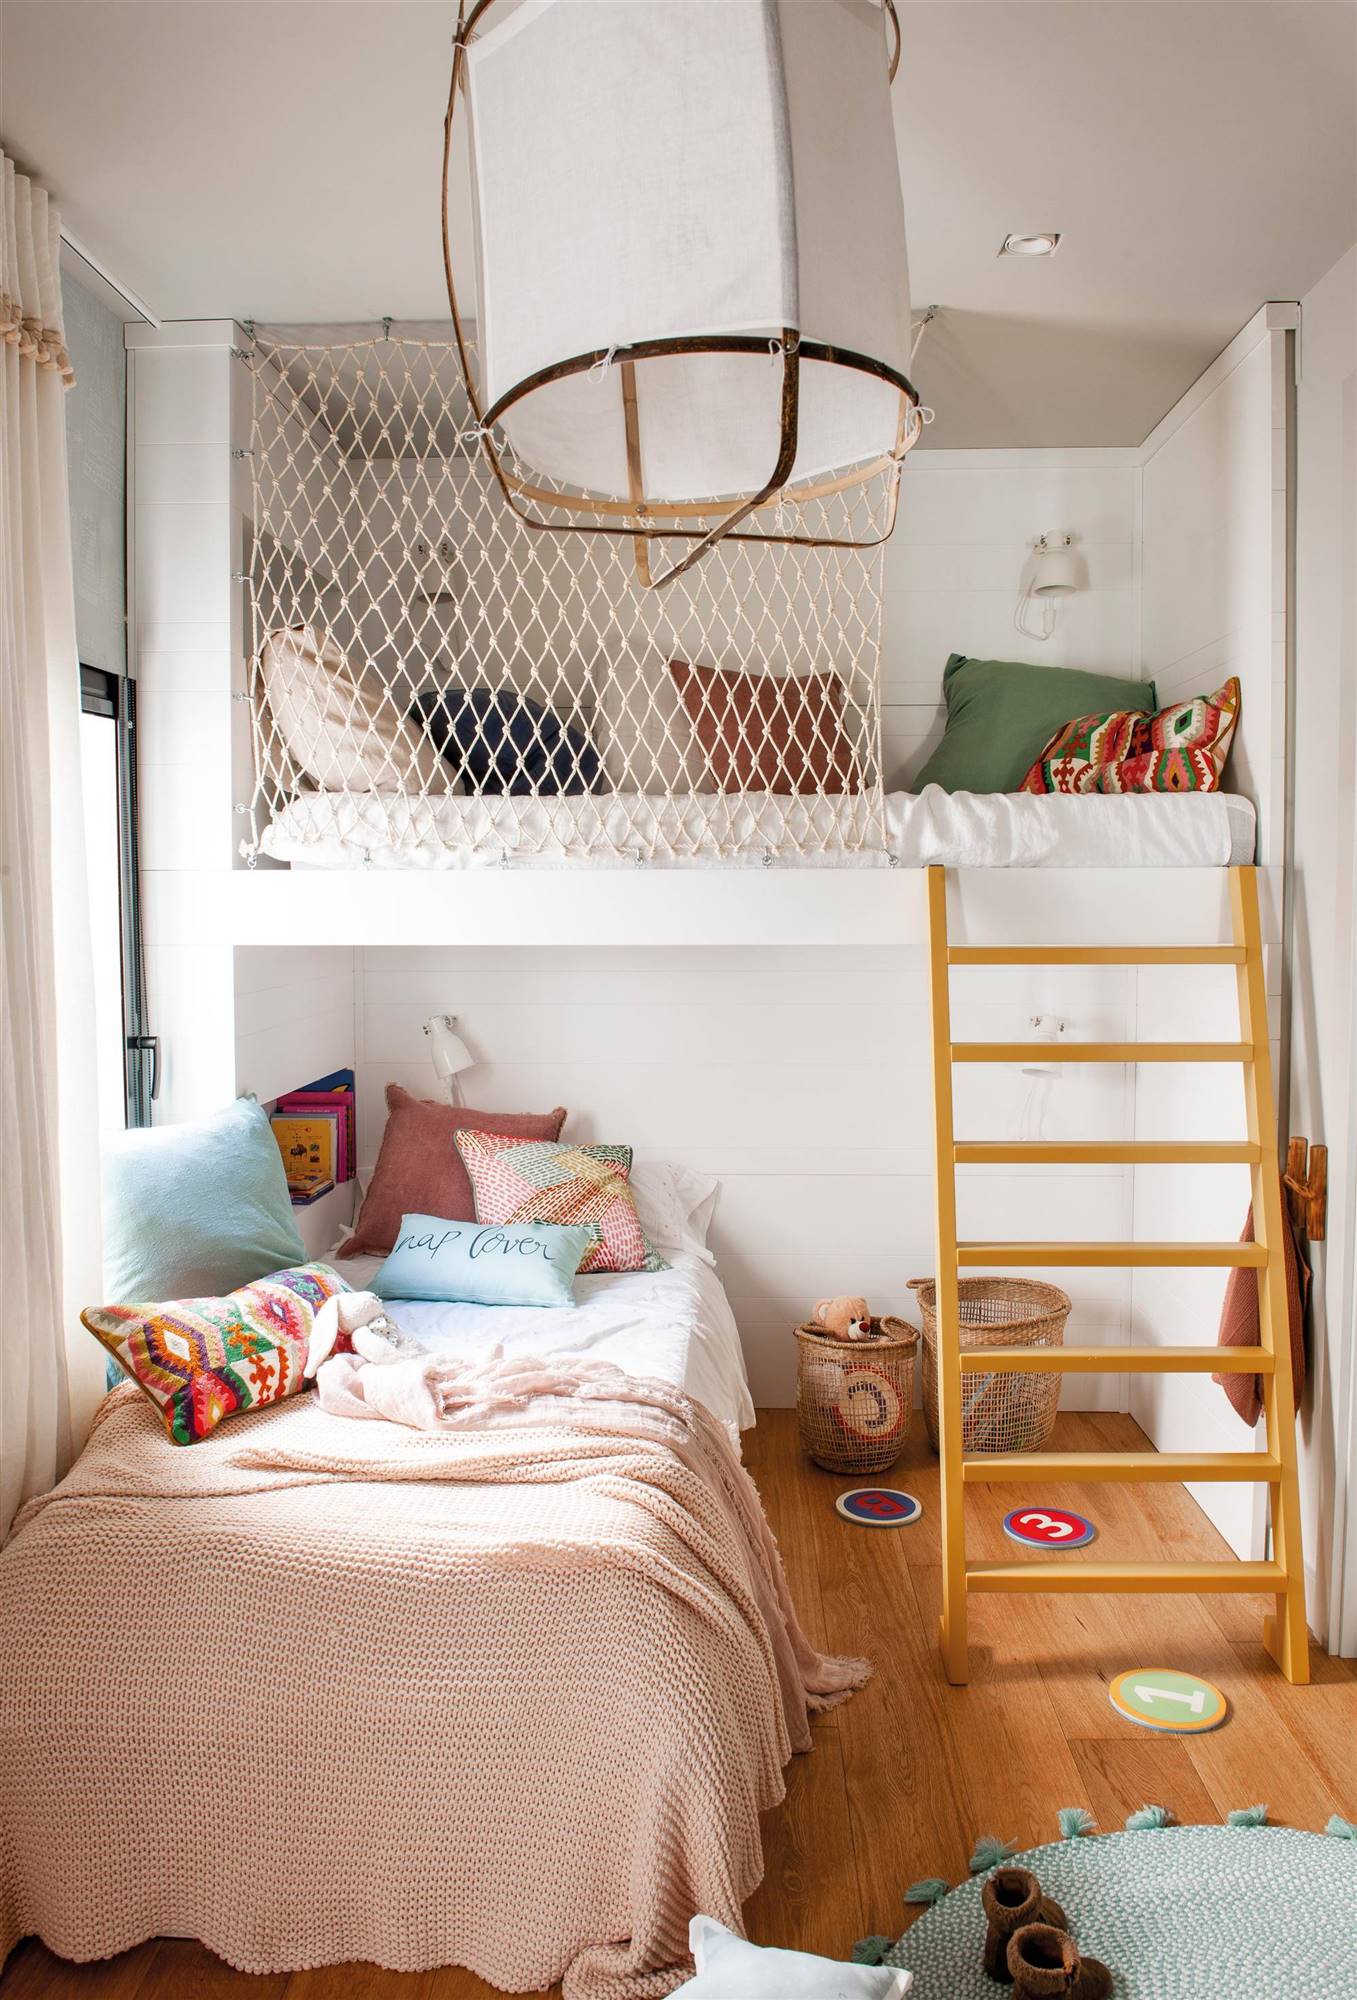 Dormitorio infantil con litera, escalera de madera y red anticaídas.